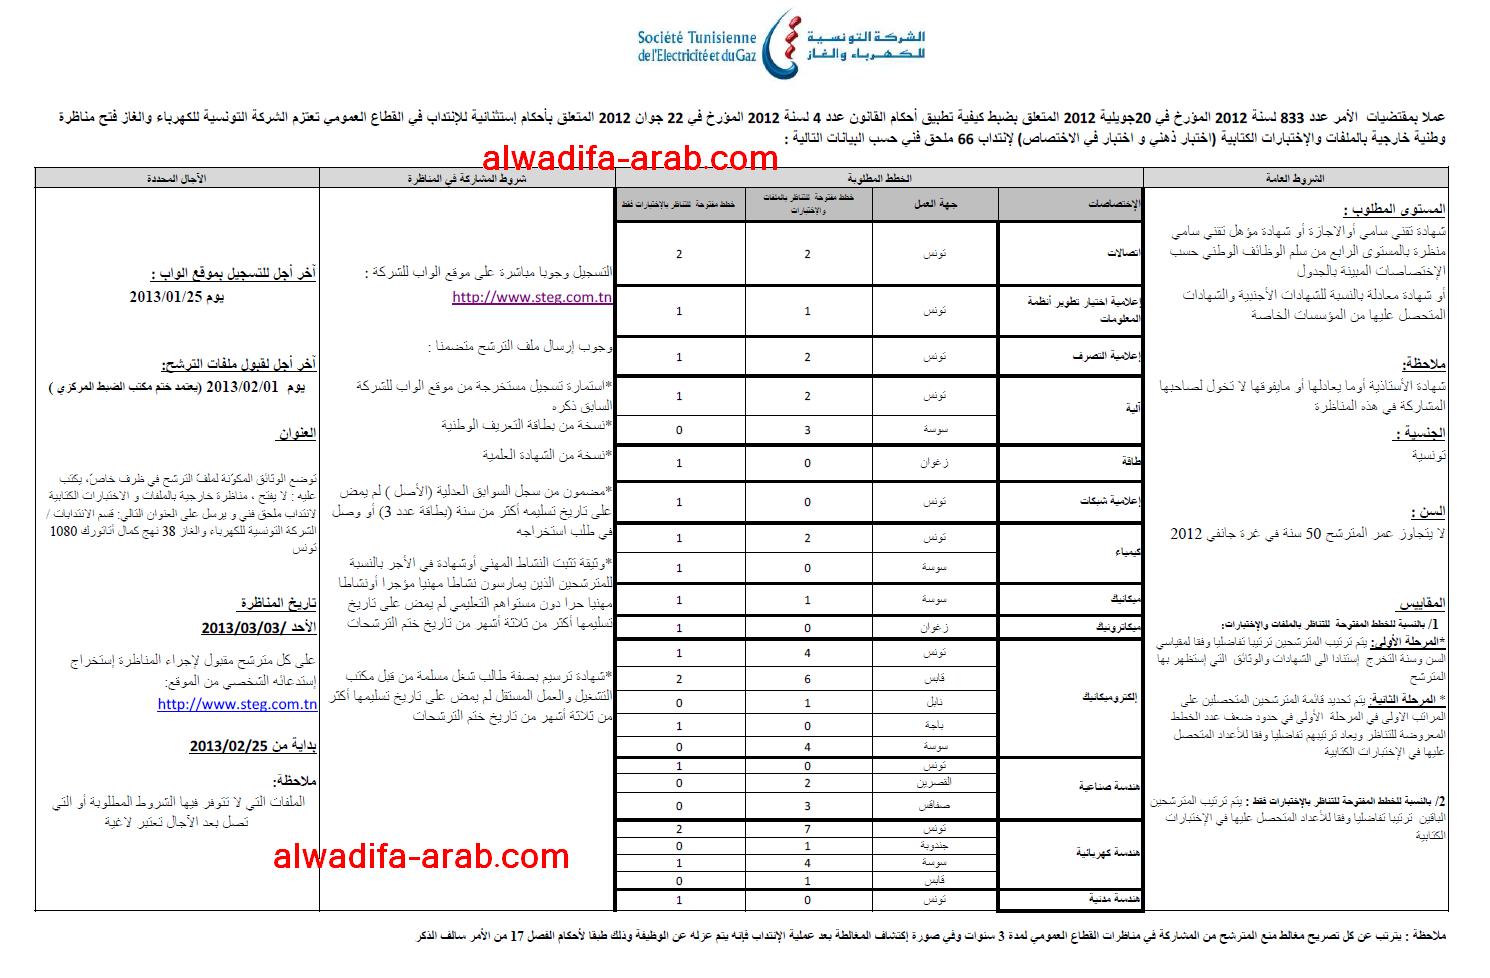 الشركة التونسية للكهرباء و الماء : مناظرة وطنية خارجية بالملفات و الاختبارات الكتابية لانتداب 66 ملحق فني اخر اجل يوم 25 جانفي 2013 Conco118